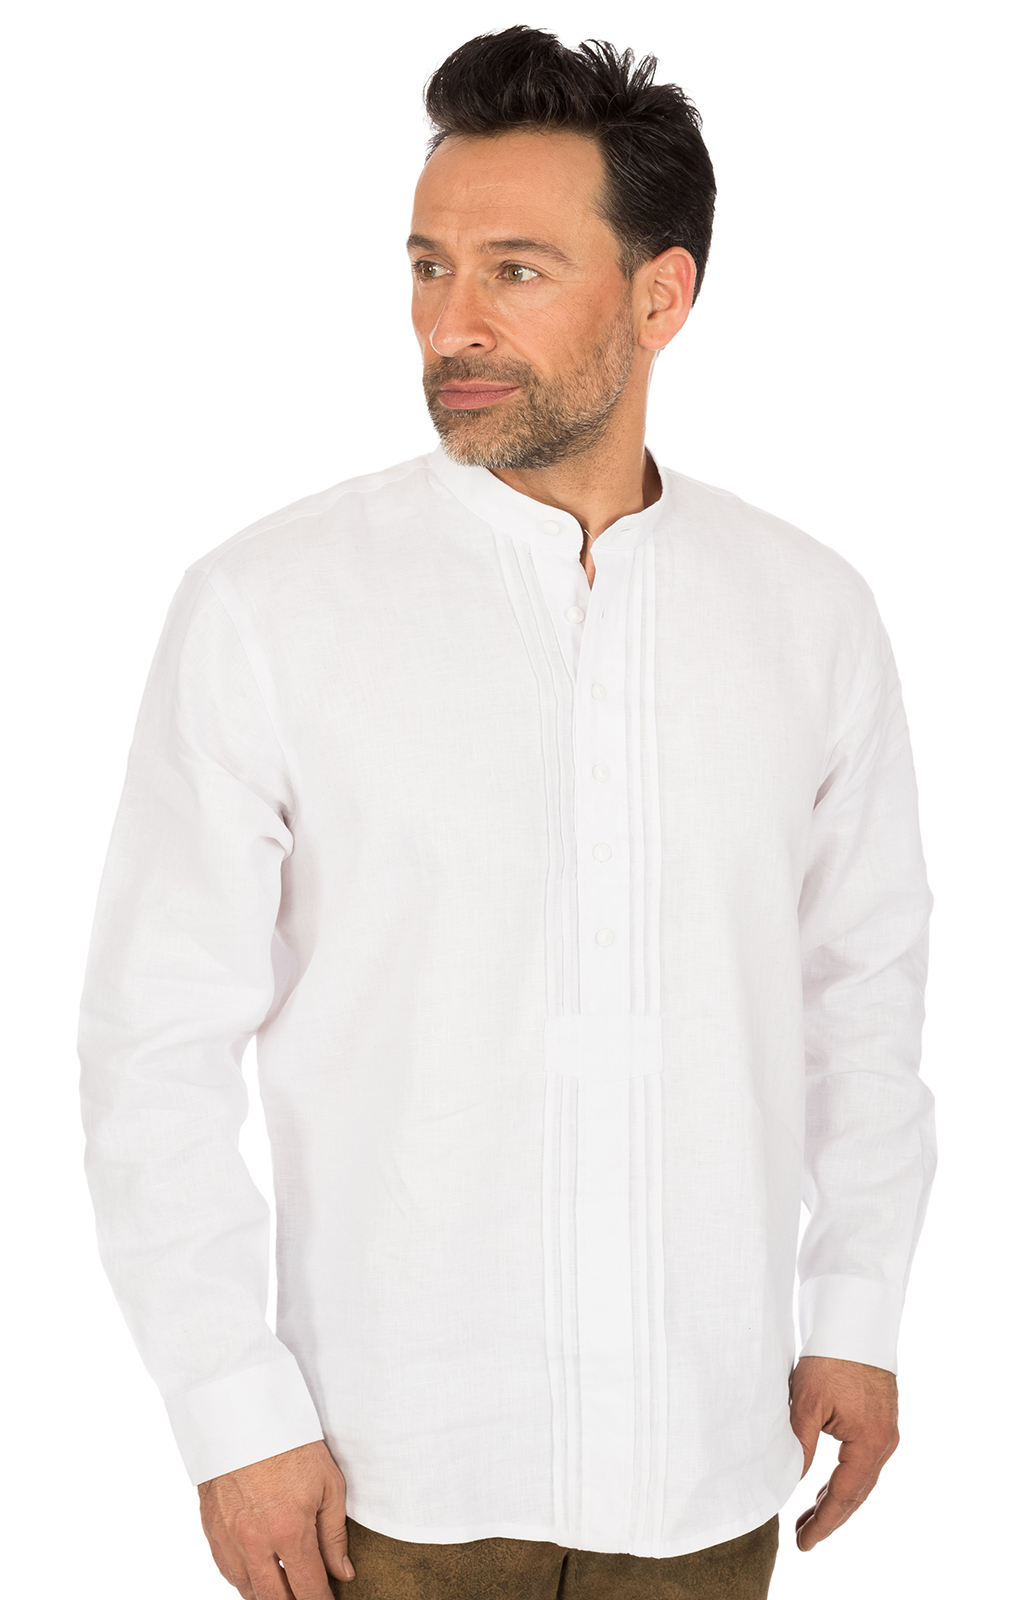 Klederdrachthemd Pfoad wit von OS-Trachten